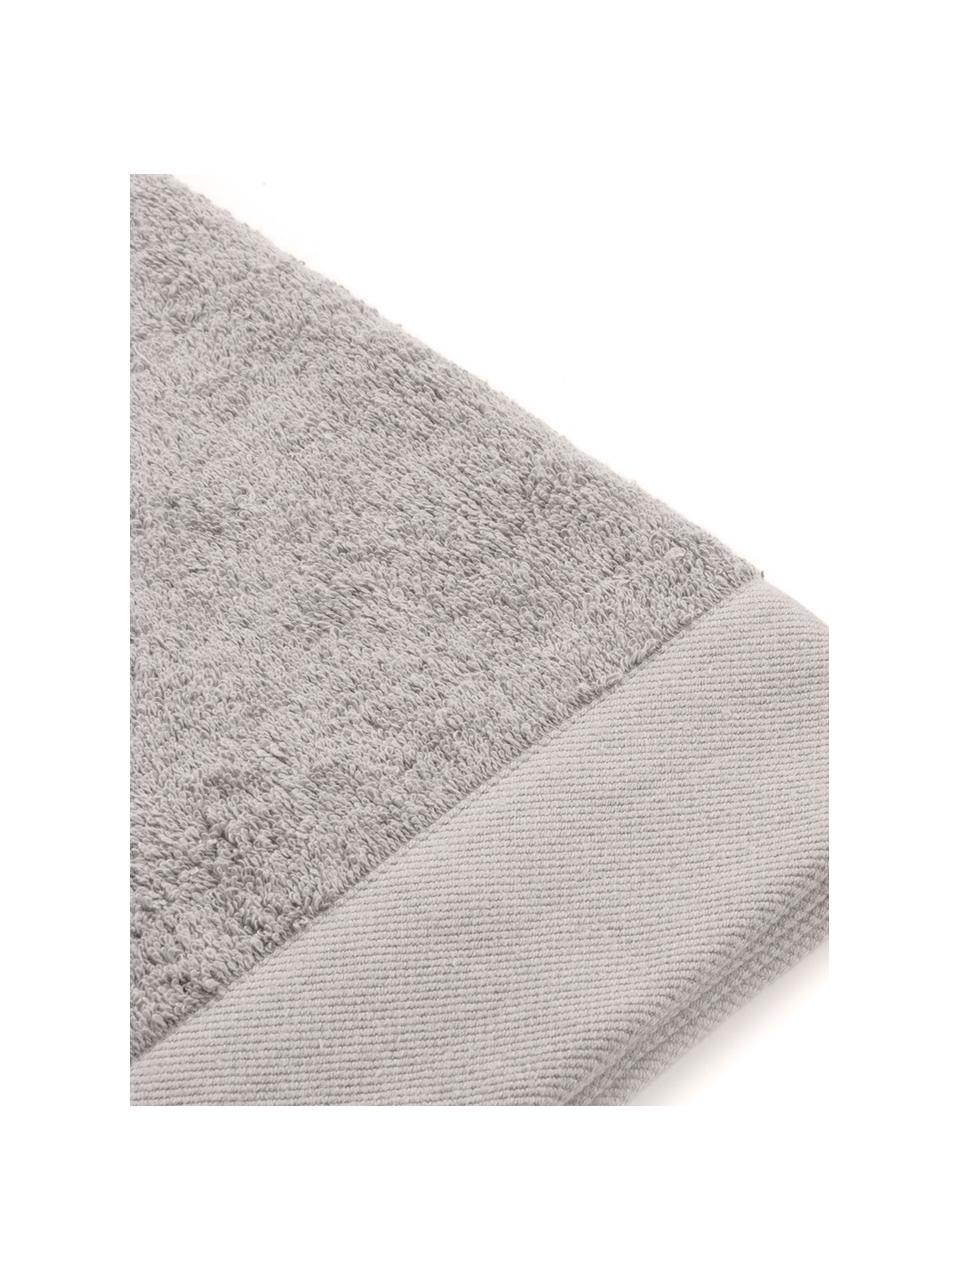 Asciugamano in cotone misto riciclato Blend, Grigio chiaro, Asciugamano per ospiti